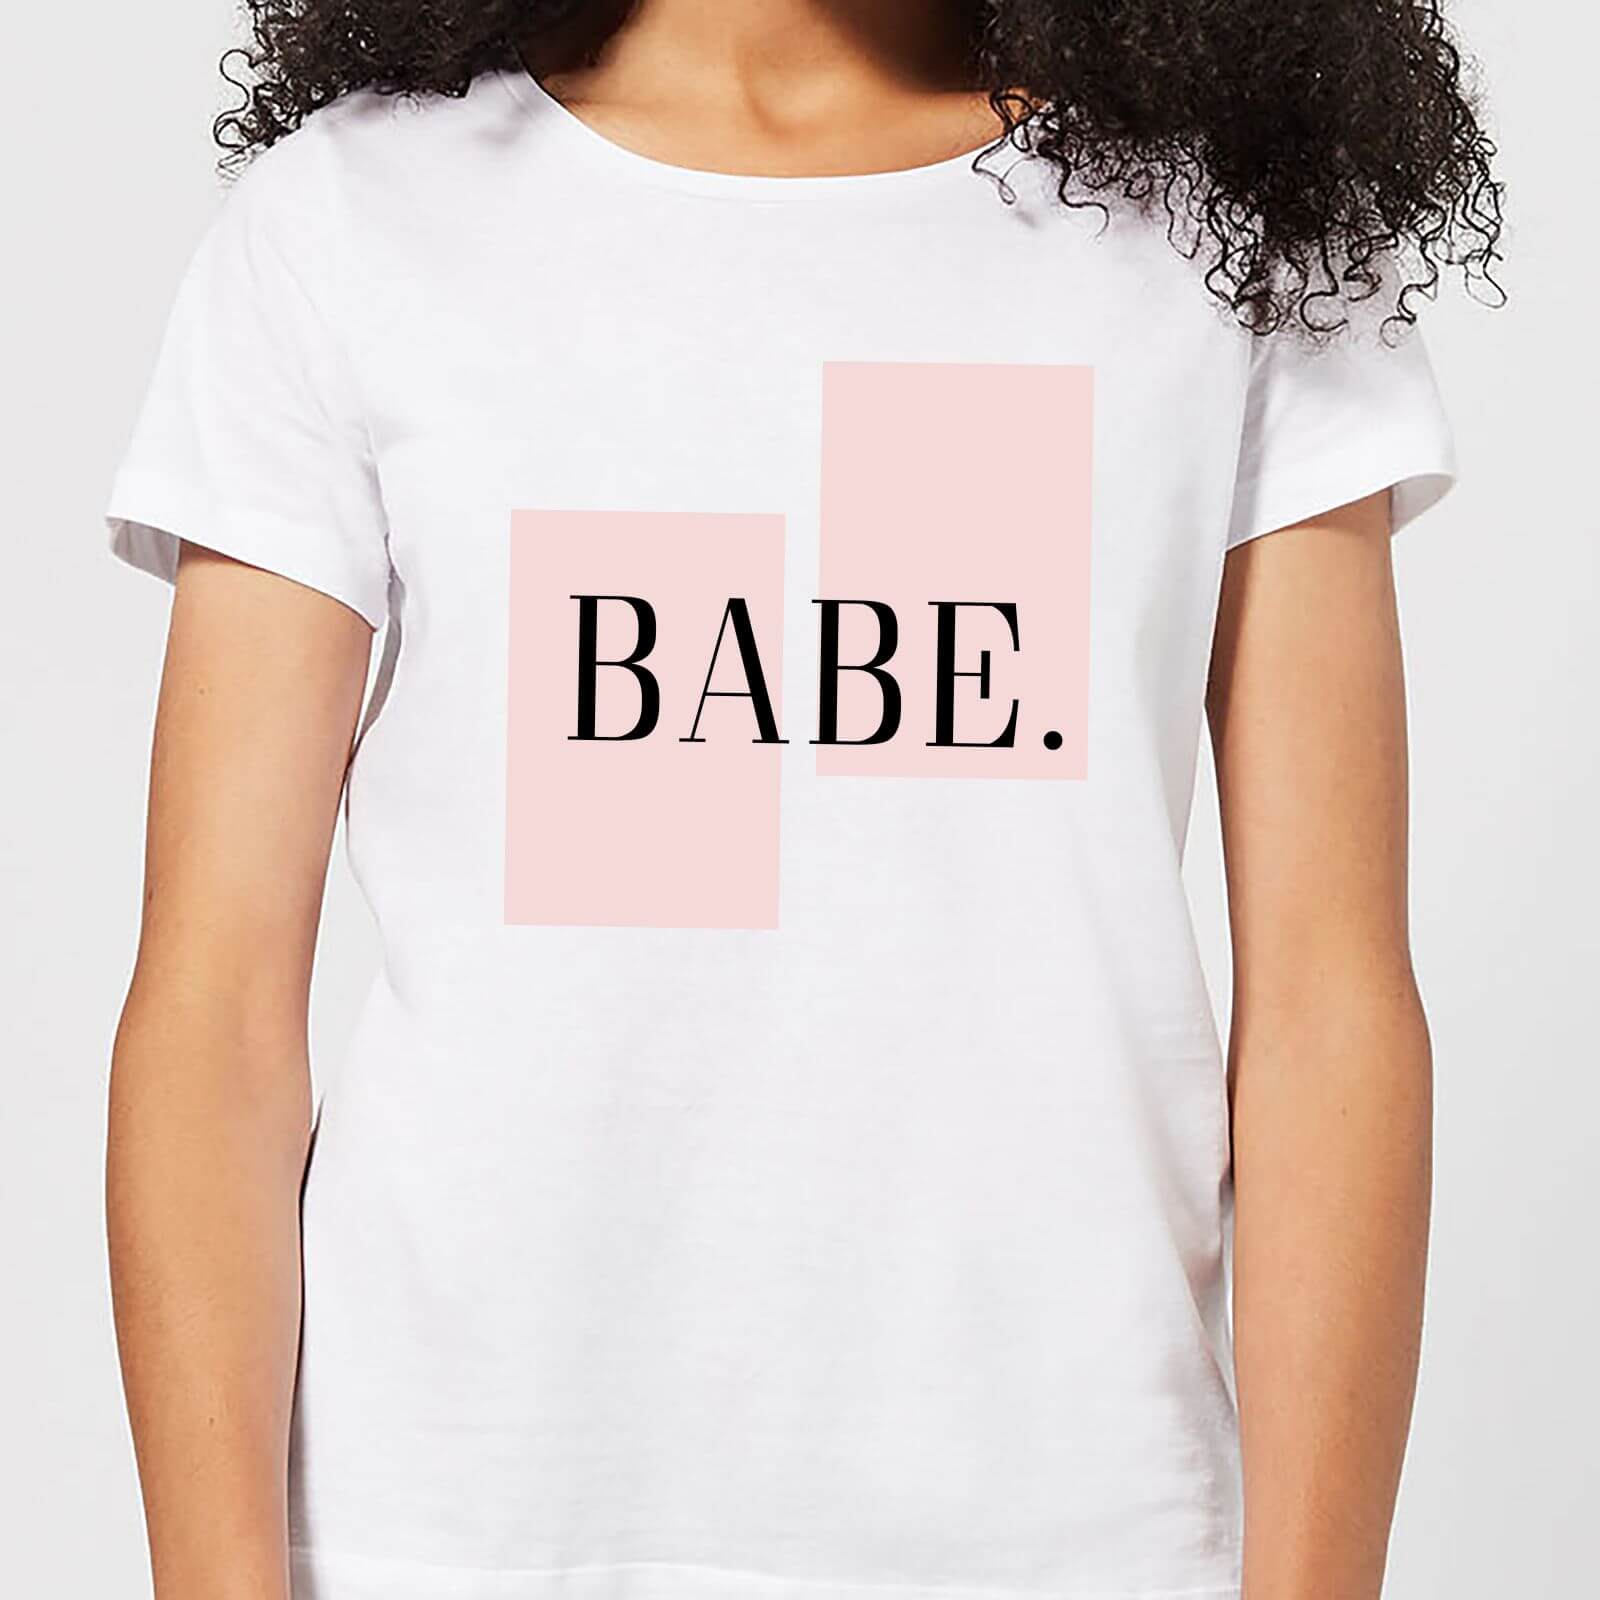 Babe Women's T-Shirt - White - S - White